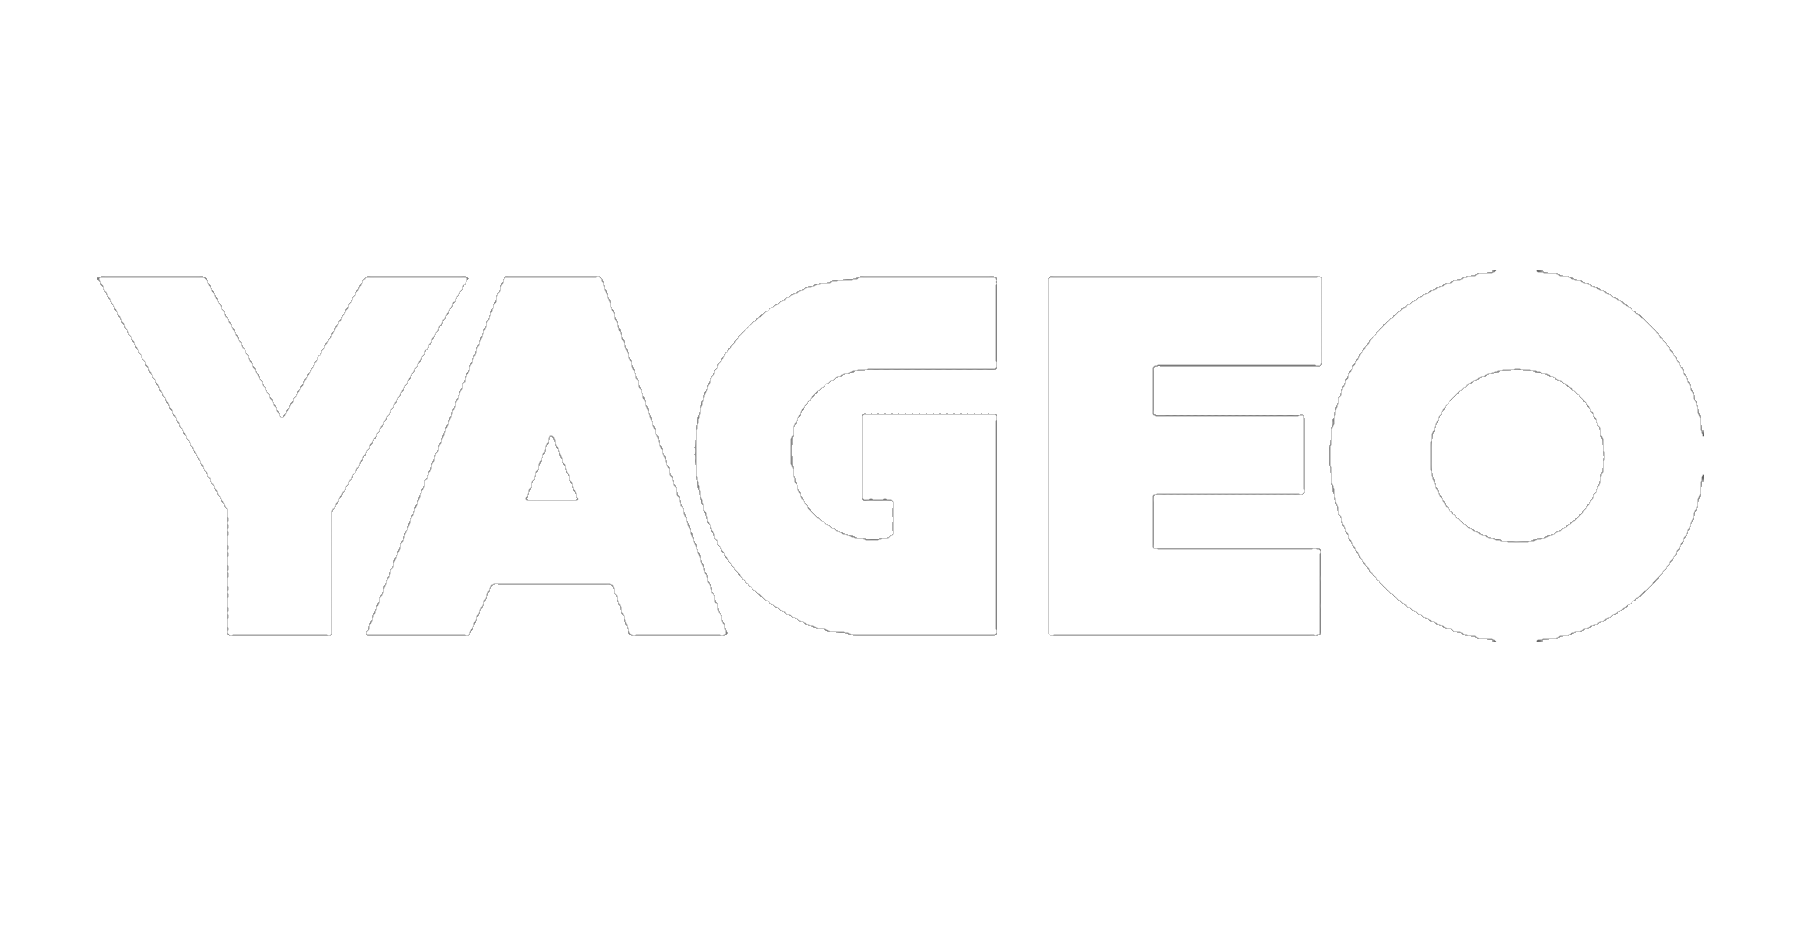 YAGEO Logo